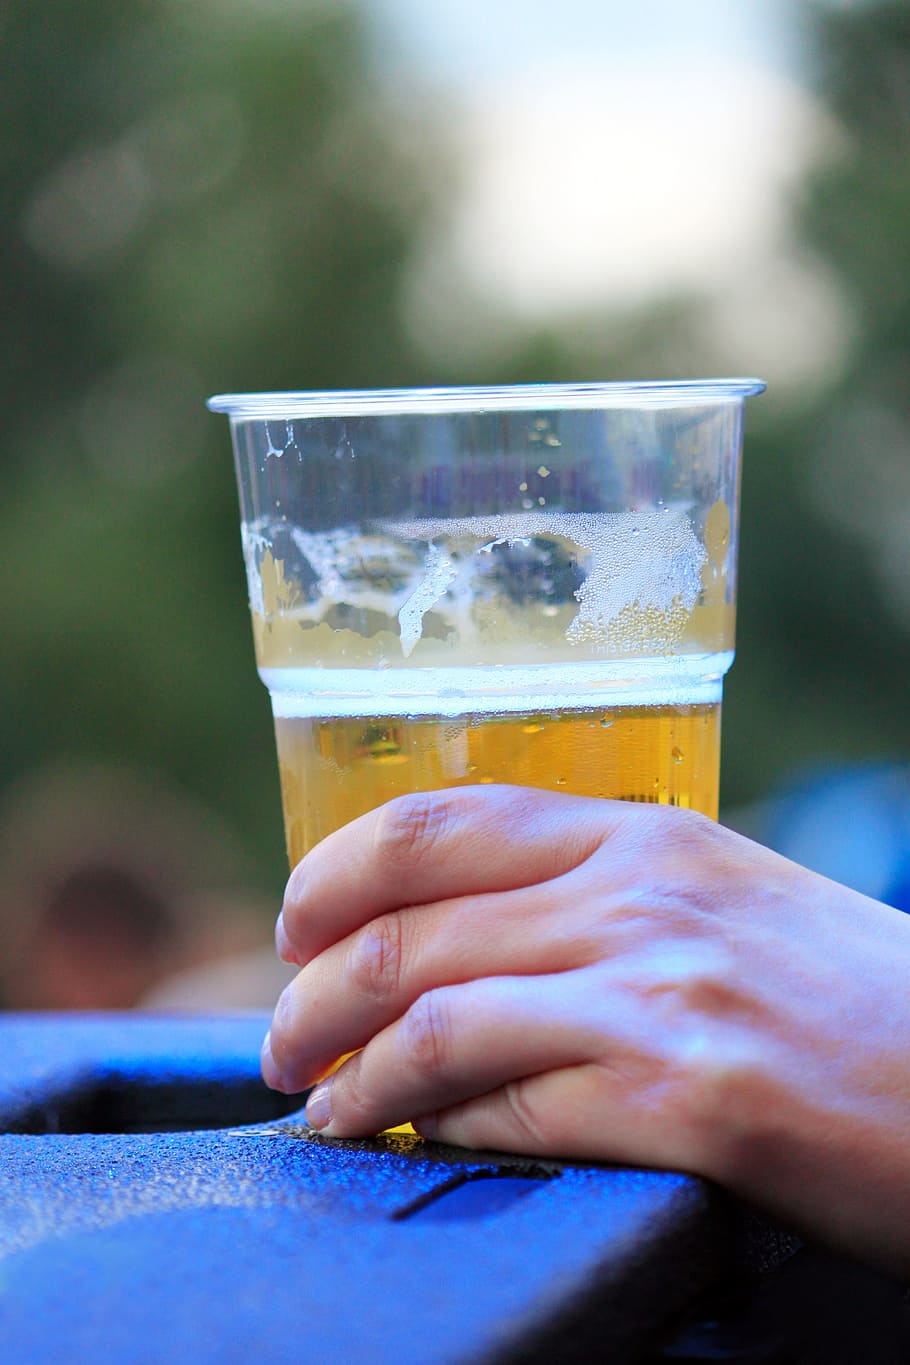 cerveza, festival, vaso, vasos de plástico, bebida, jarra de cerveza, fiesta, mano, festival de verano, humano